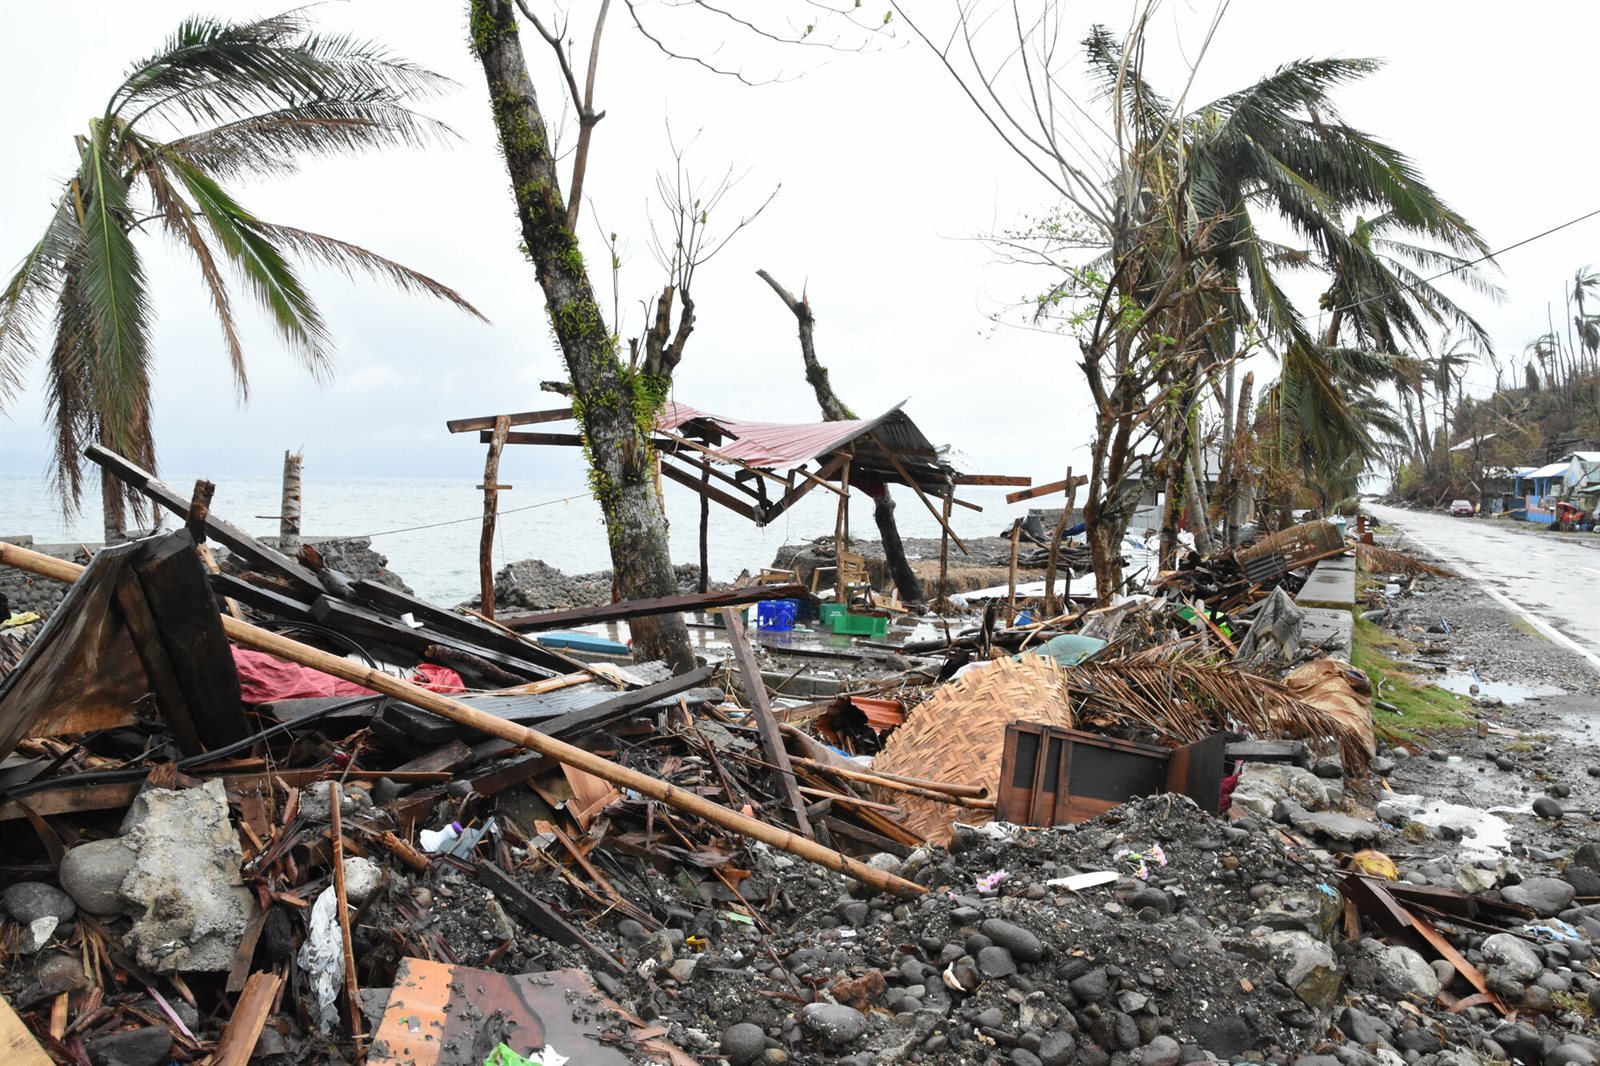 De Filipijnen merken volop de gevolgen van klimaatverandering. Hier klimaatschade door tyfoon Rai in 2021. 